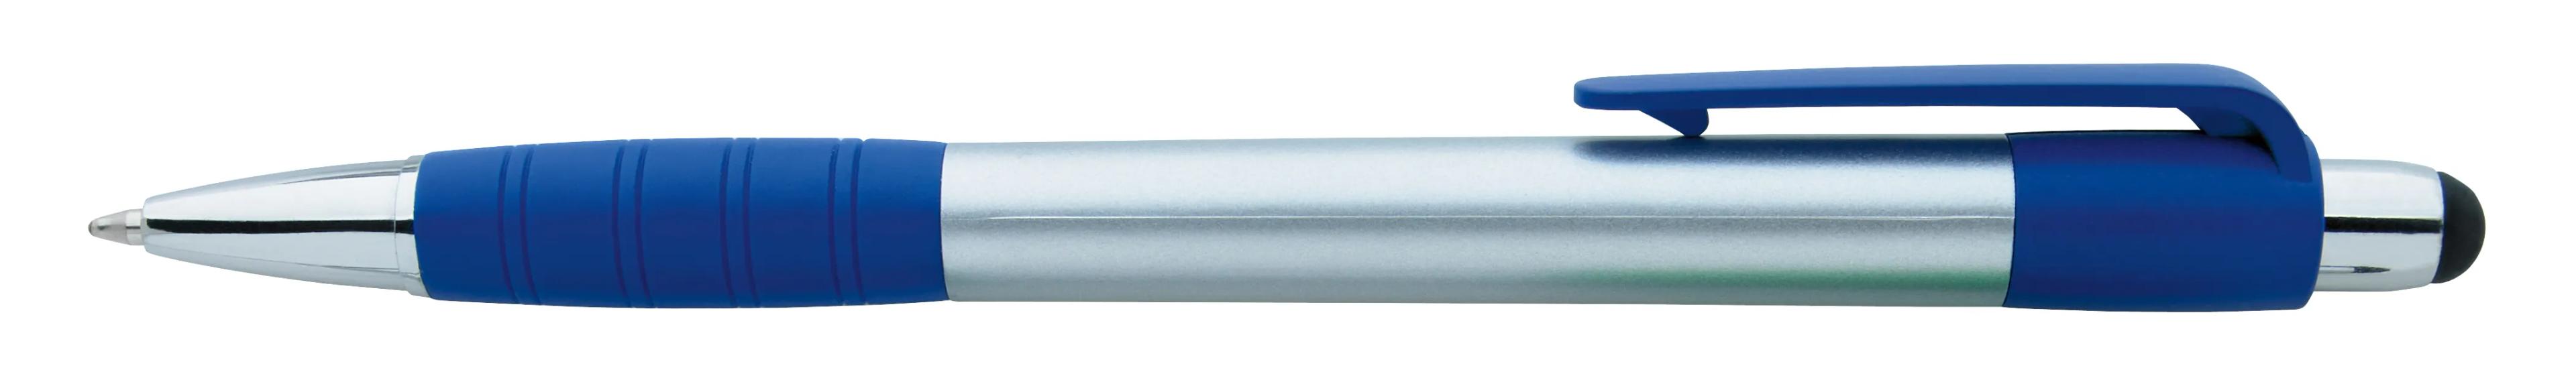 Silver Element Stylus Pen 6 of 53